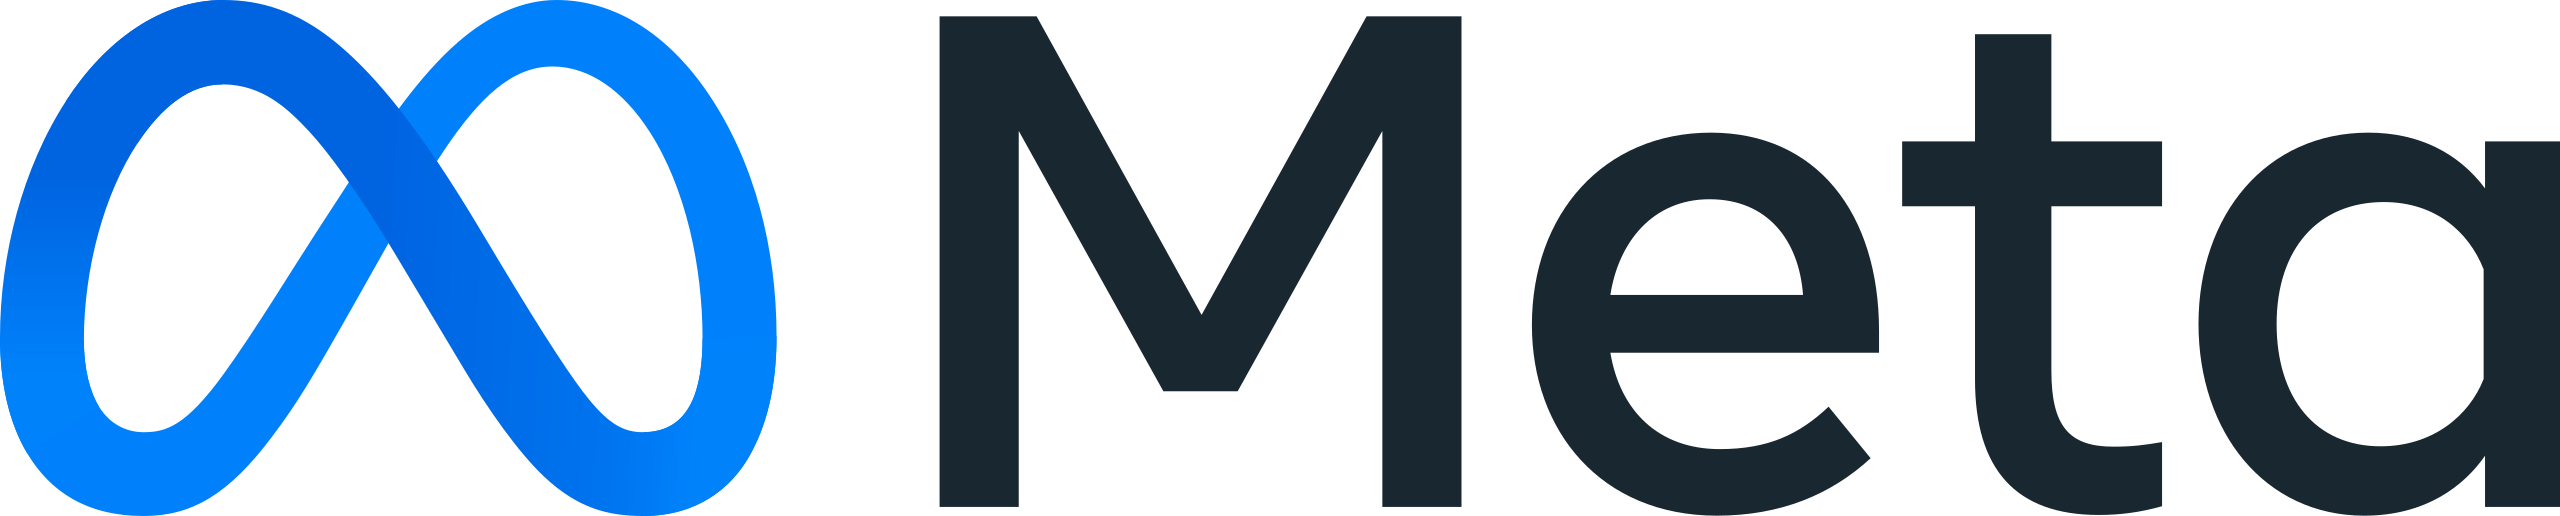 Isolation Meta Platforms Inc. logo.